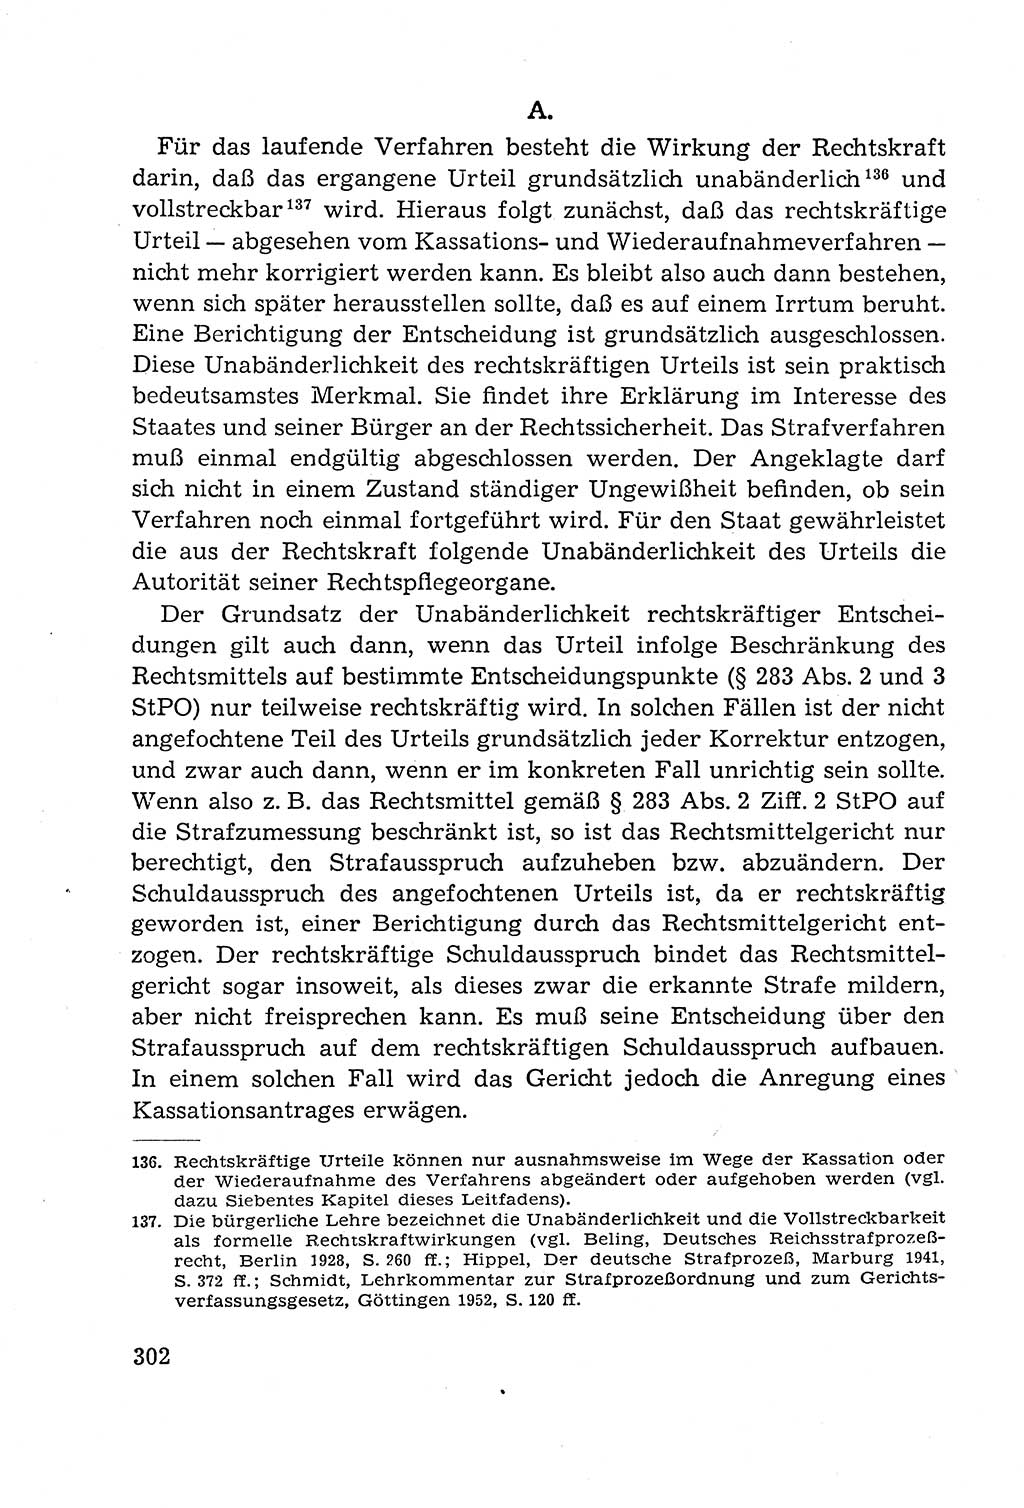 Leitfaden des Strafprozeßrechts der Deutschen Demokratischen Republik (DDR) 1959, Seite 302 (LF StPR DDR 1959, S. 302)